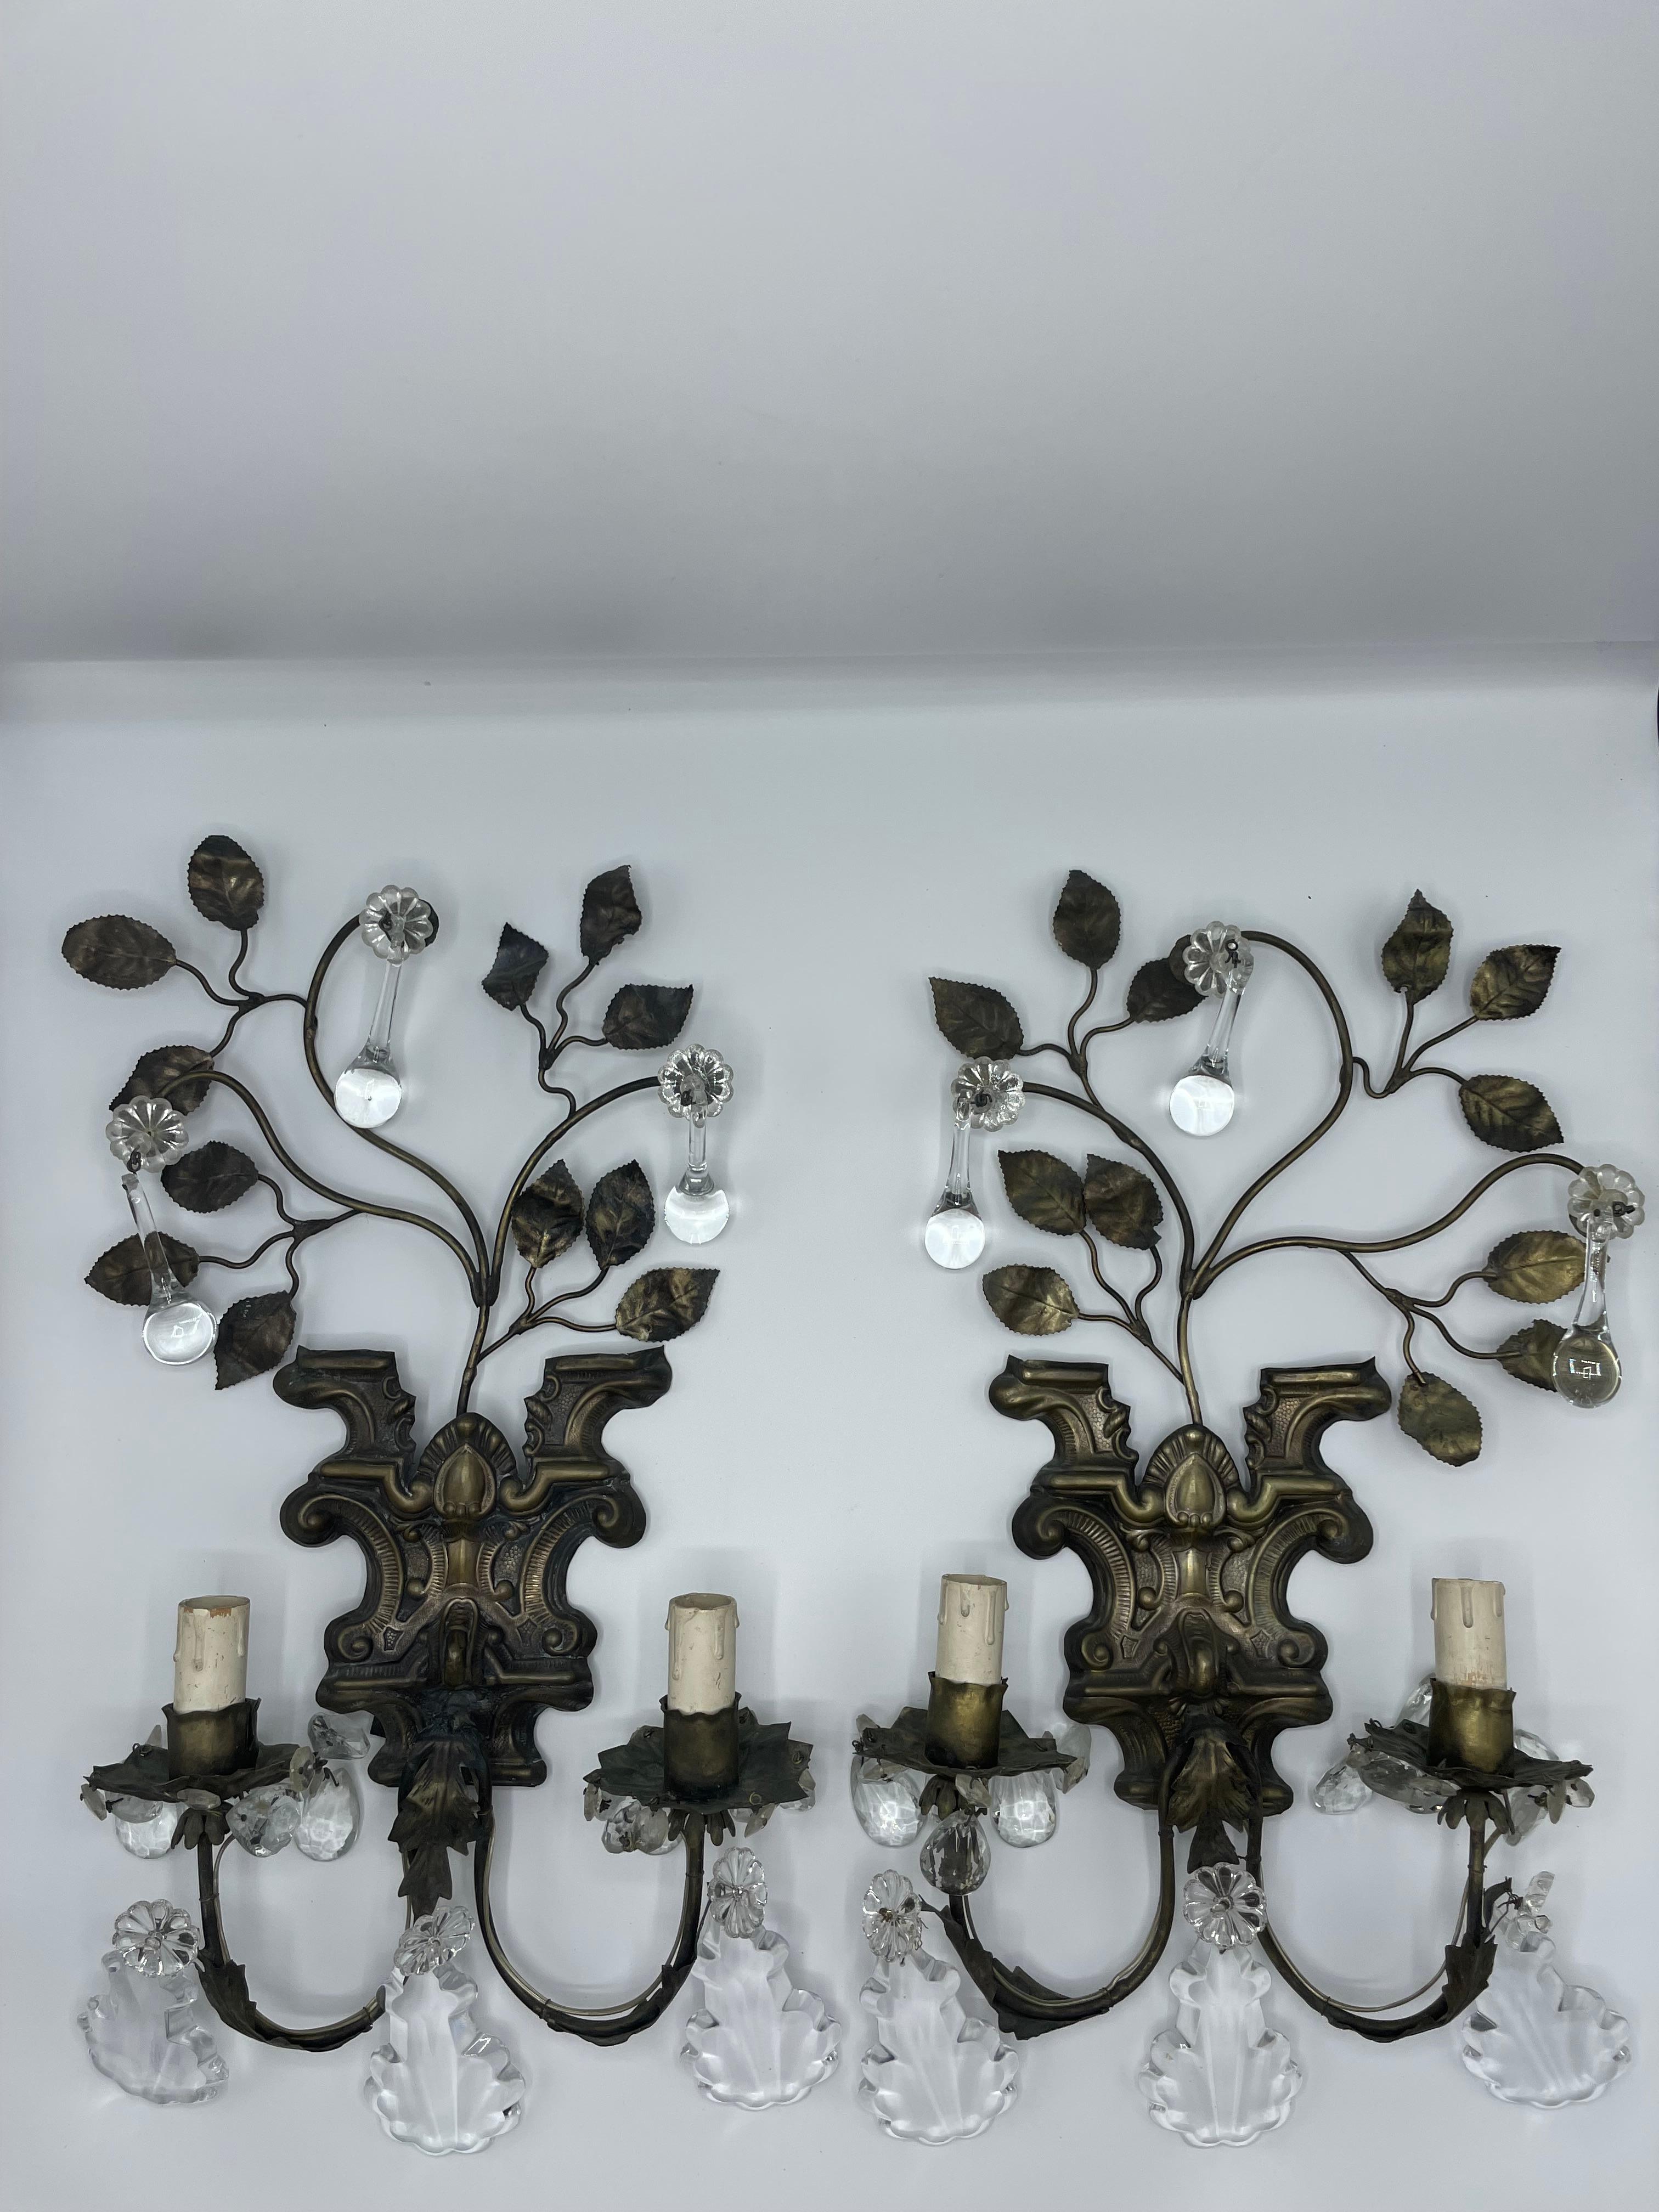 Paire d'appliques françaises en tole repoussée de la fin du 19ème siècle, à deux lumières.
Des branches au feuillage taillé sont fixées à un socle orné de reliefs décoratifs. Des glands en forme de goutte d'eau pendent des feuilles minces. Deux